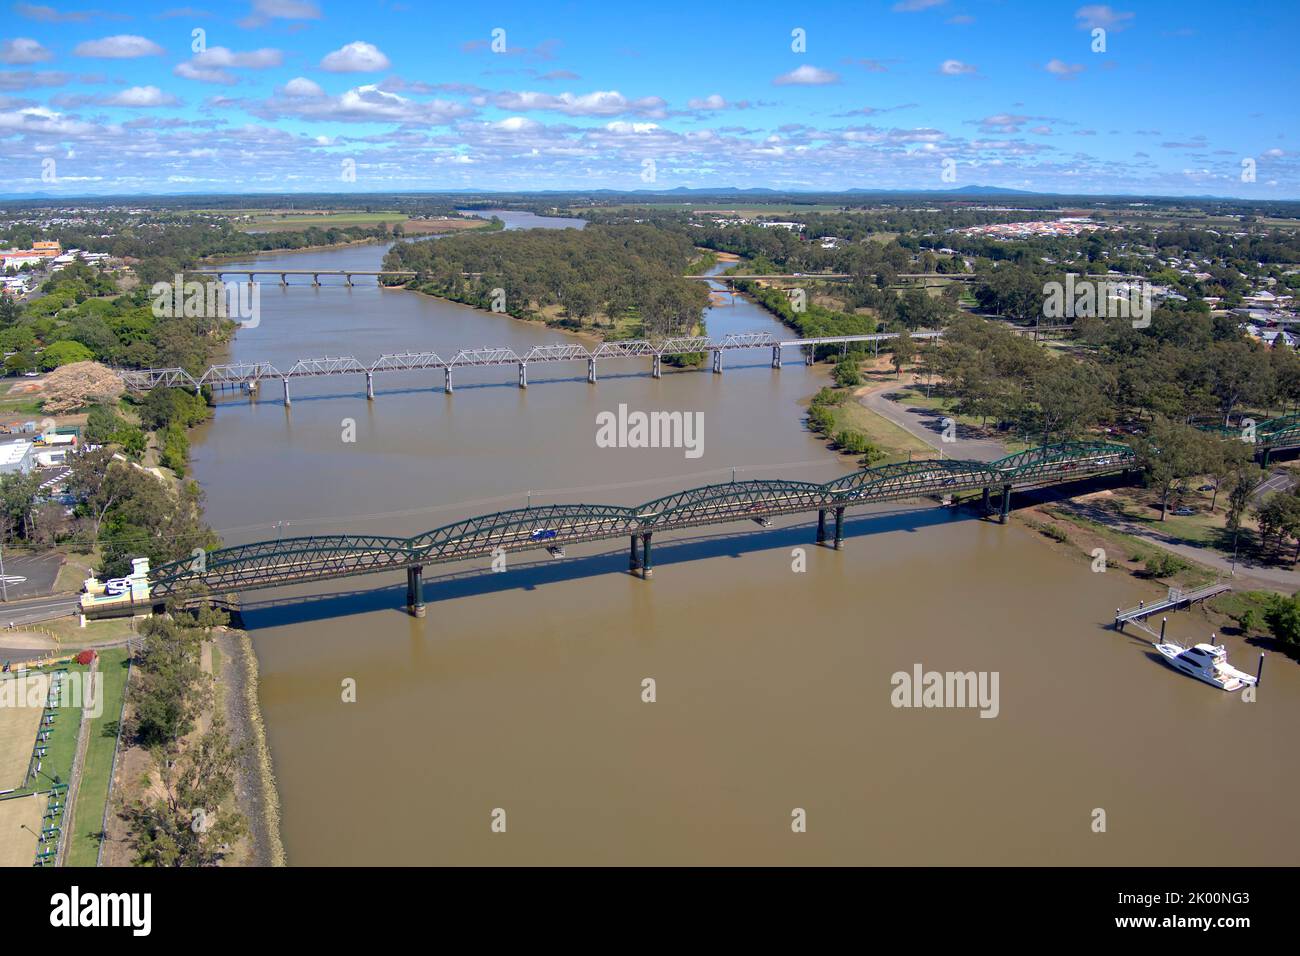 Aereo del ponte Burnett Ttraffic e del ponte ferroviario che attraversa il fiume Burnett a Bundaberg Queensland Australia Foto Stock